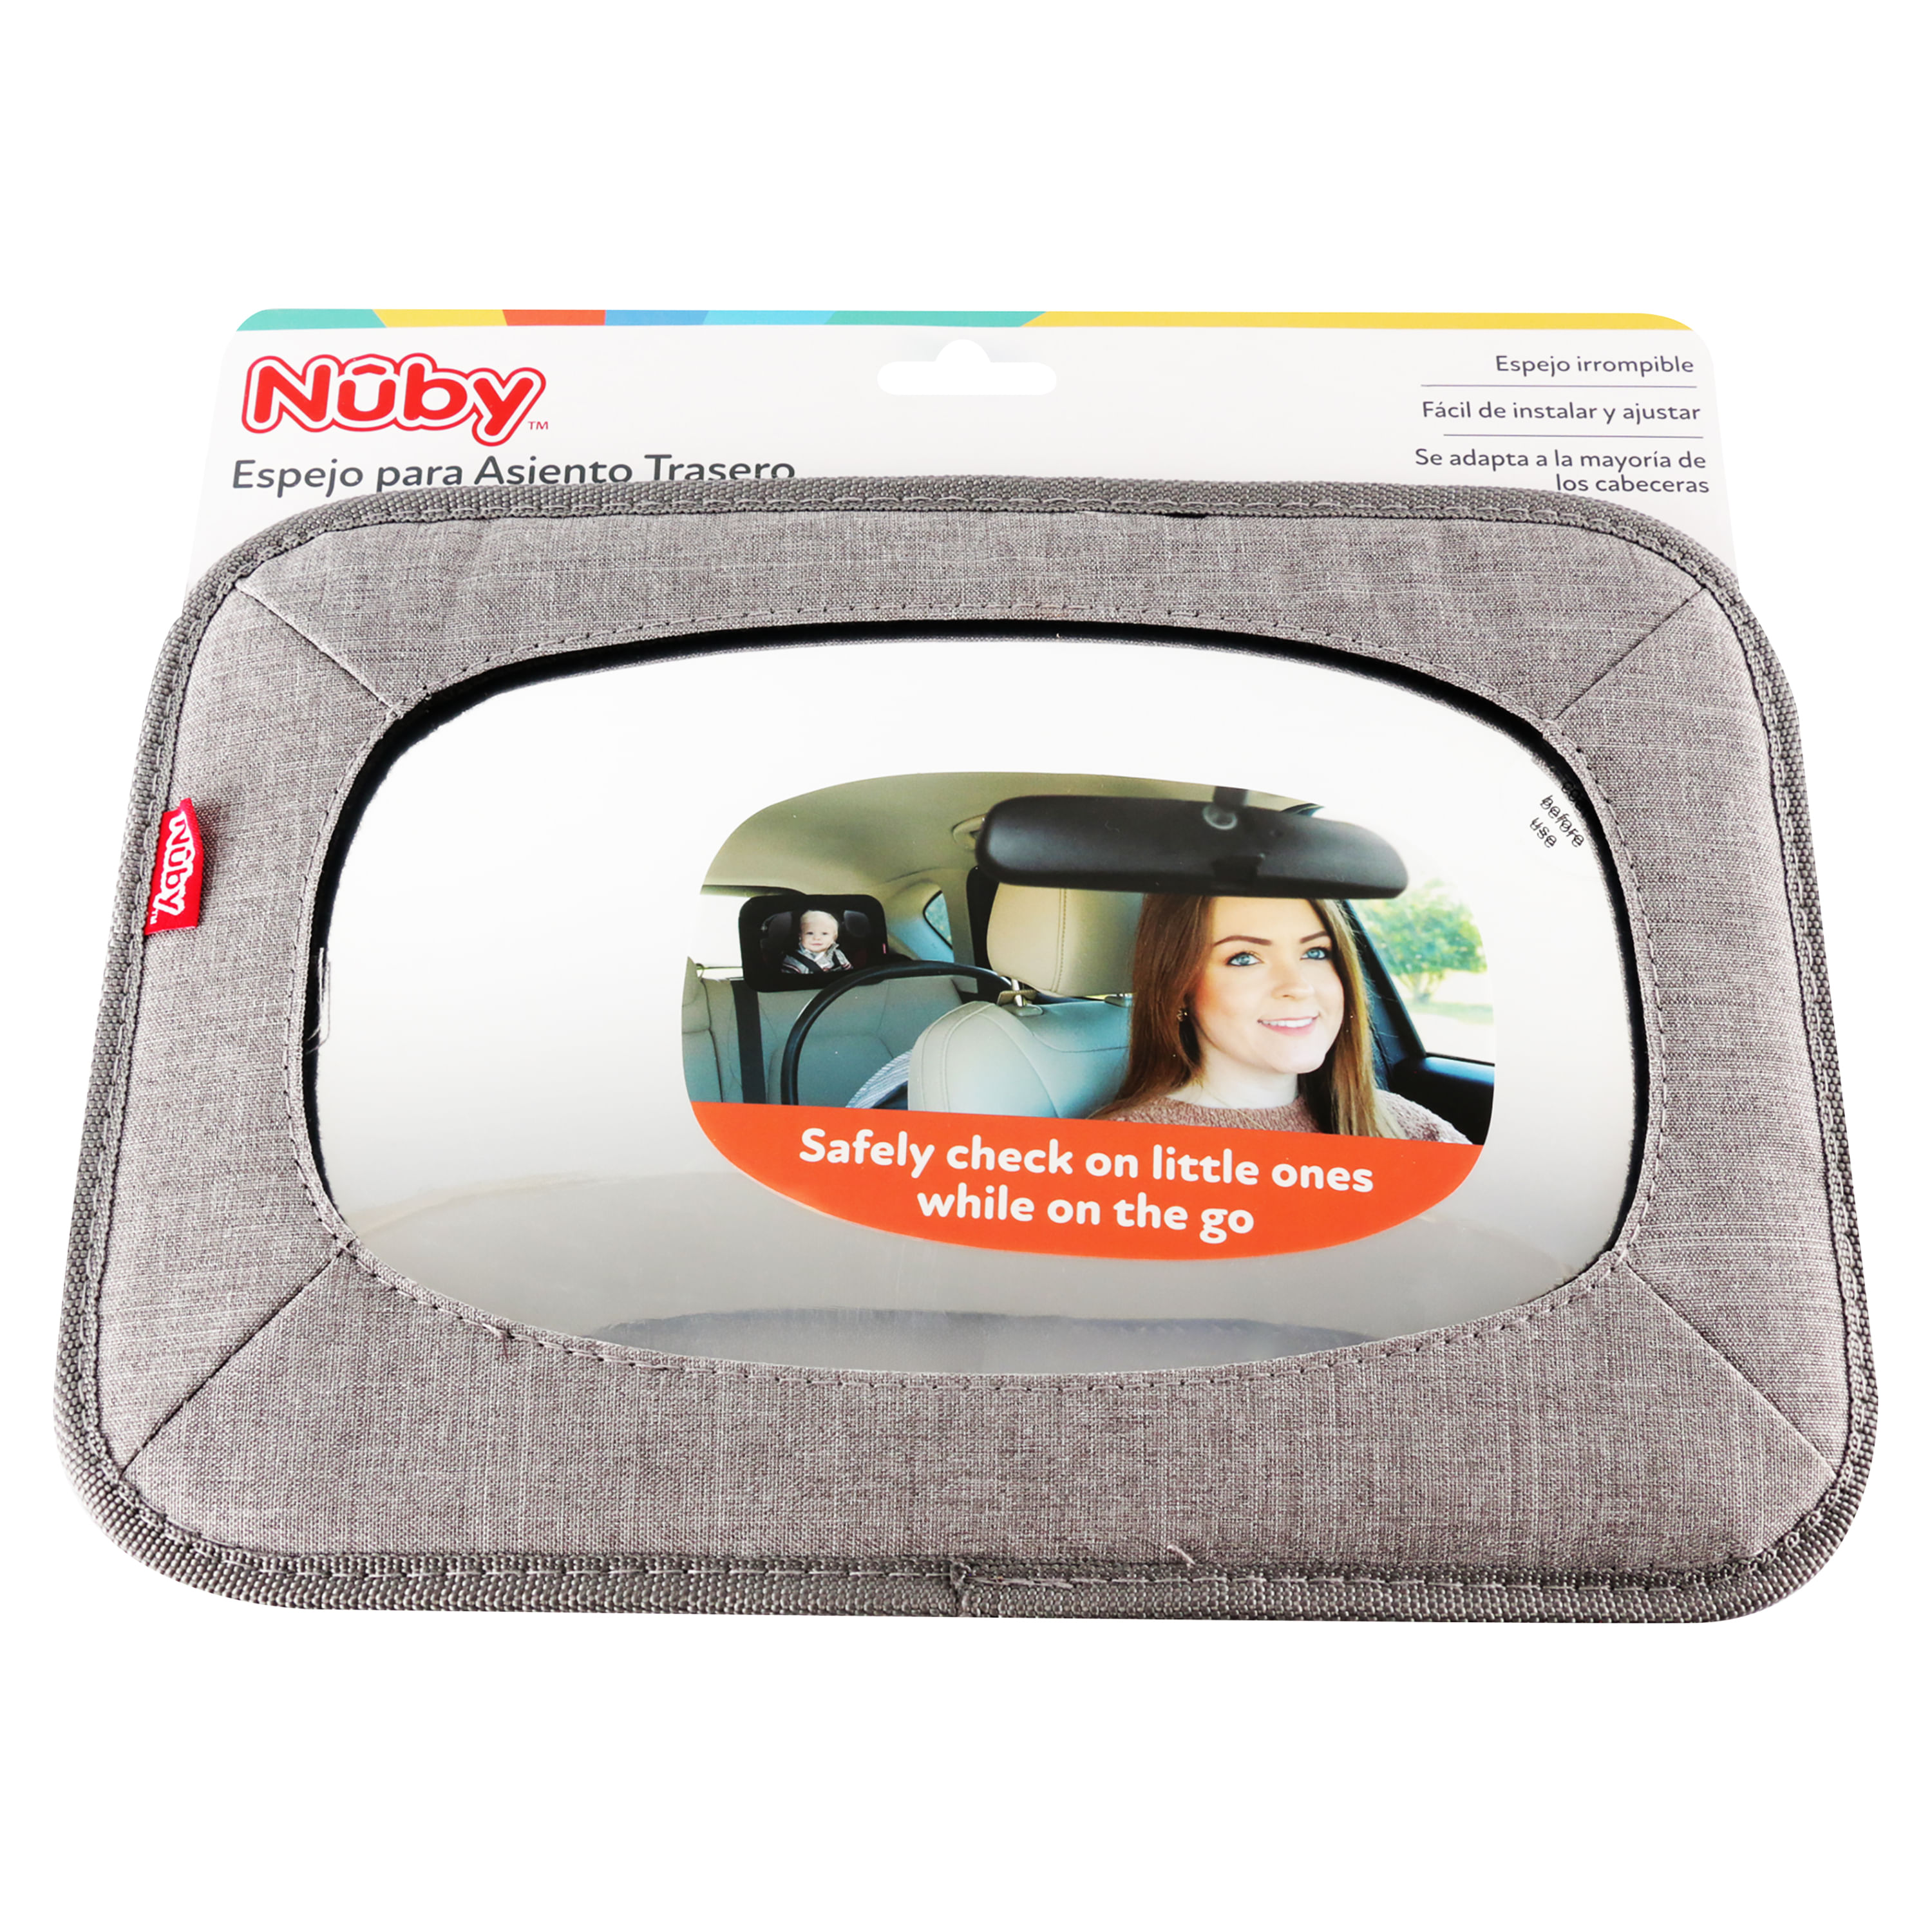 Mvd Kids - Nuby Espejo asiento trasero del auto Espejo para el